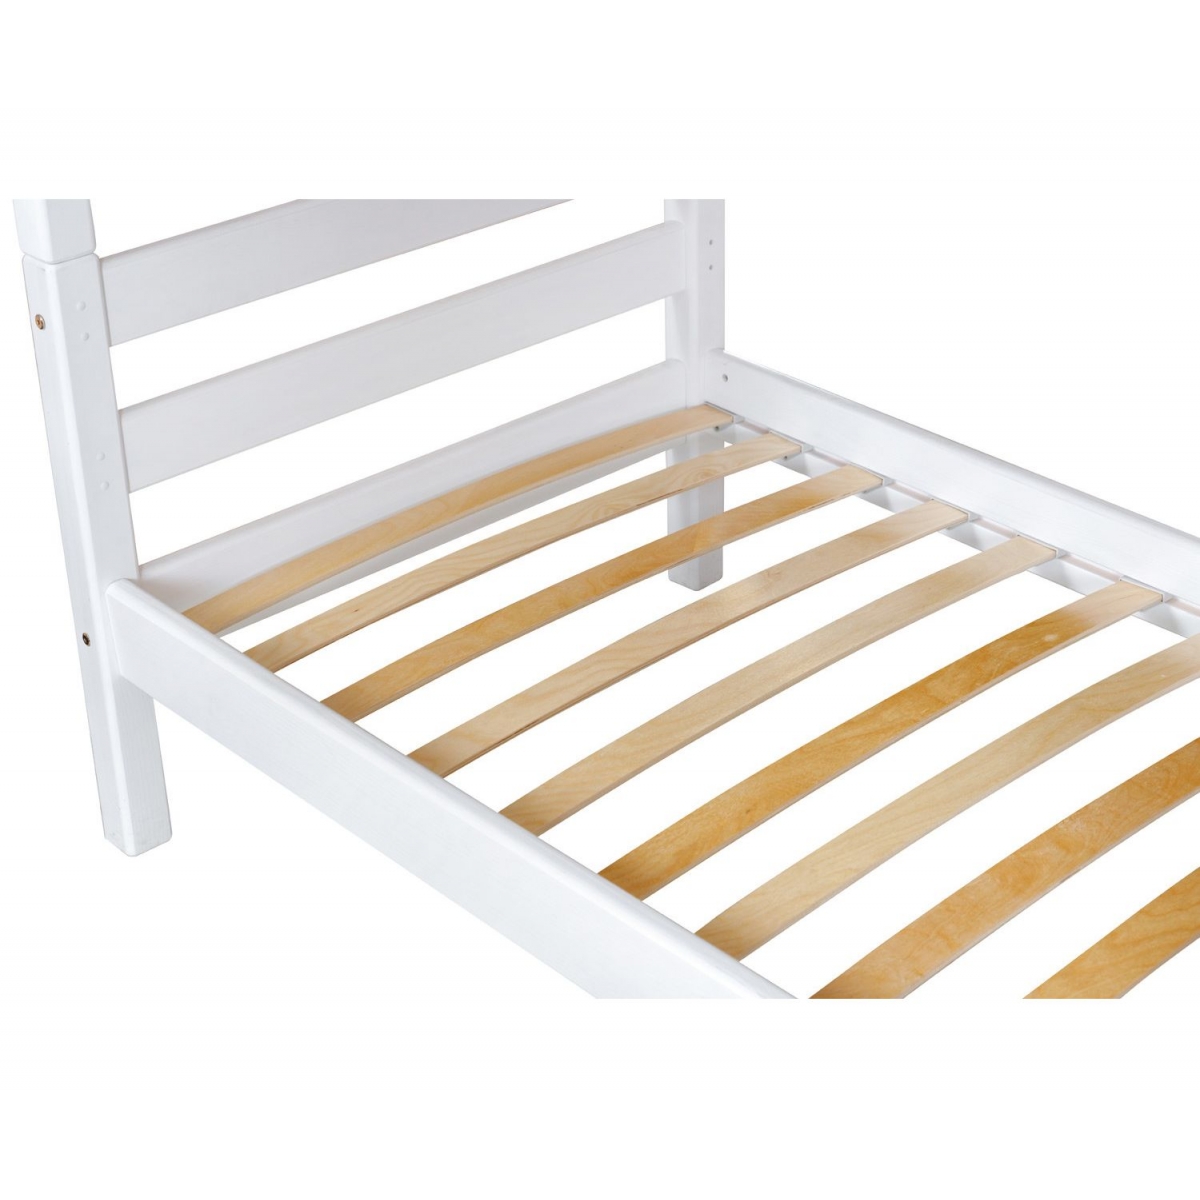 Двухъярусная кровать Соня Вариант 9 с прямой лестницей (белая)